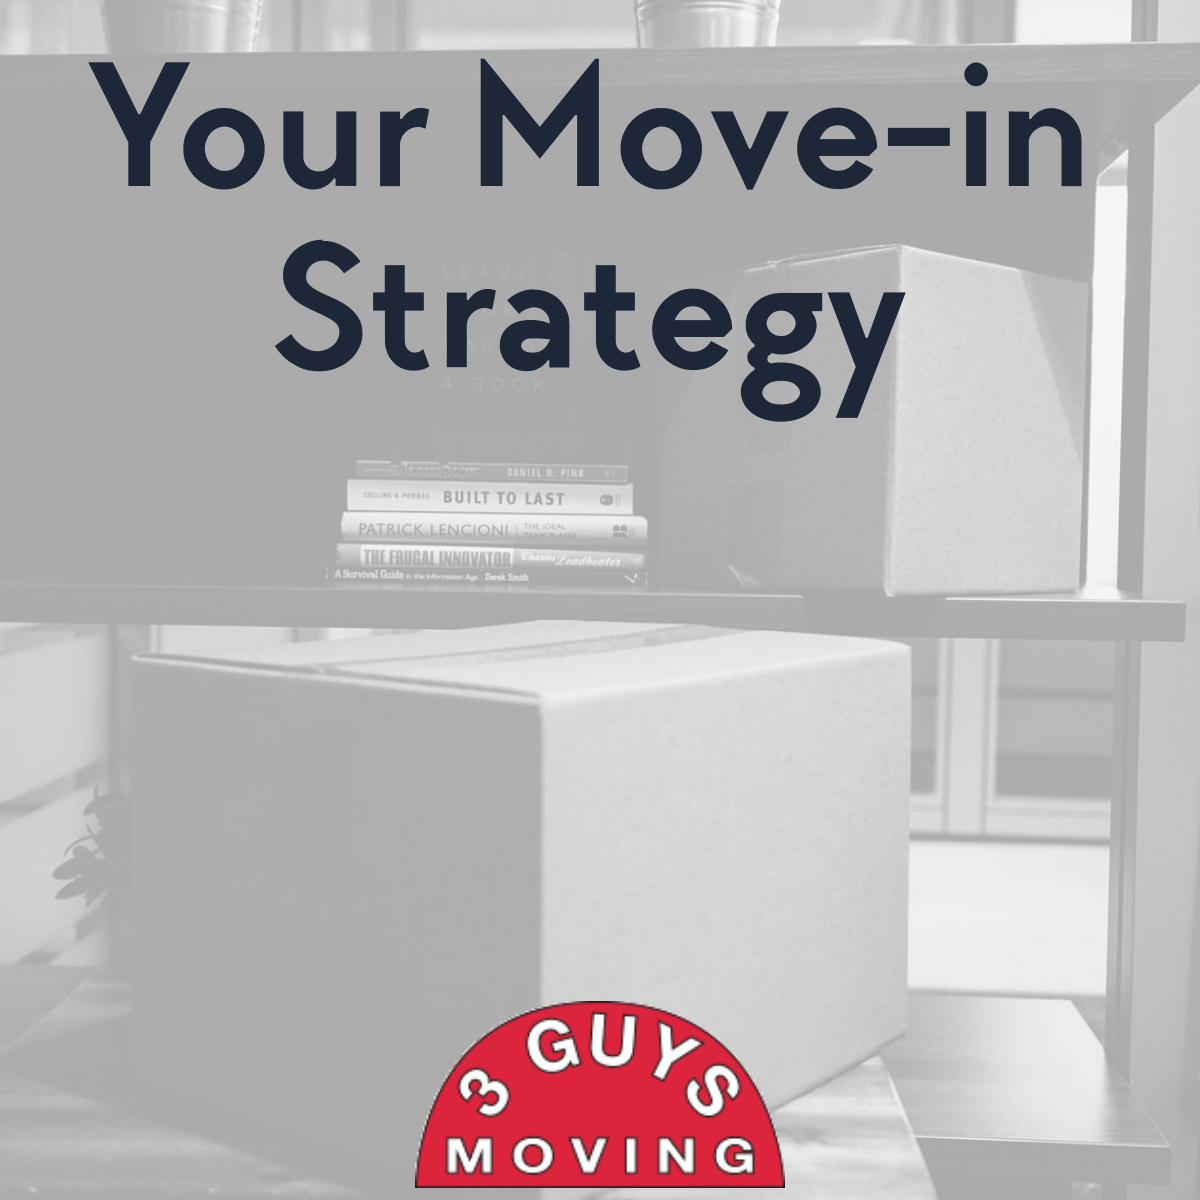 Your Move in Strategy 1 - Your Move-in Strategy